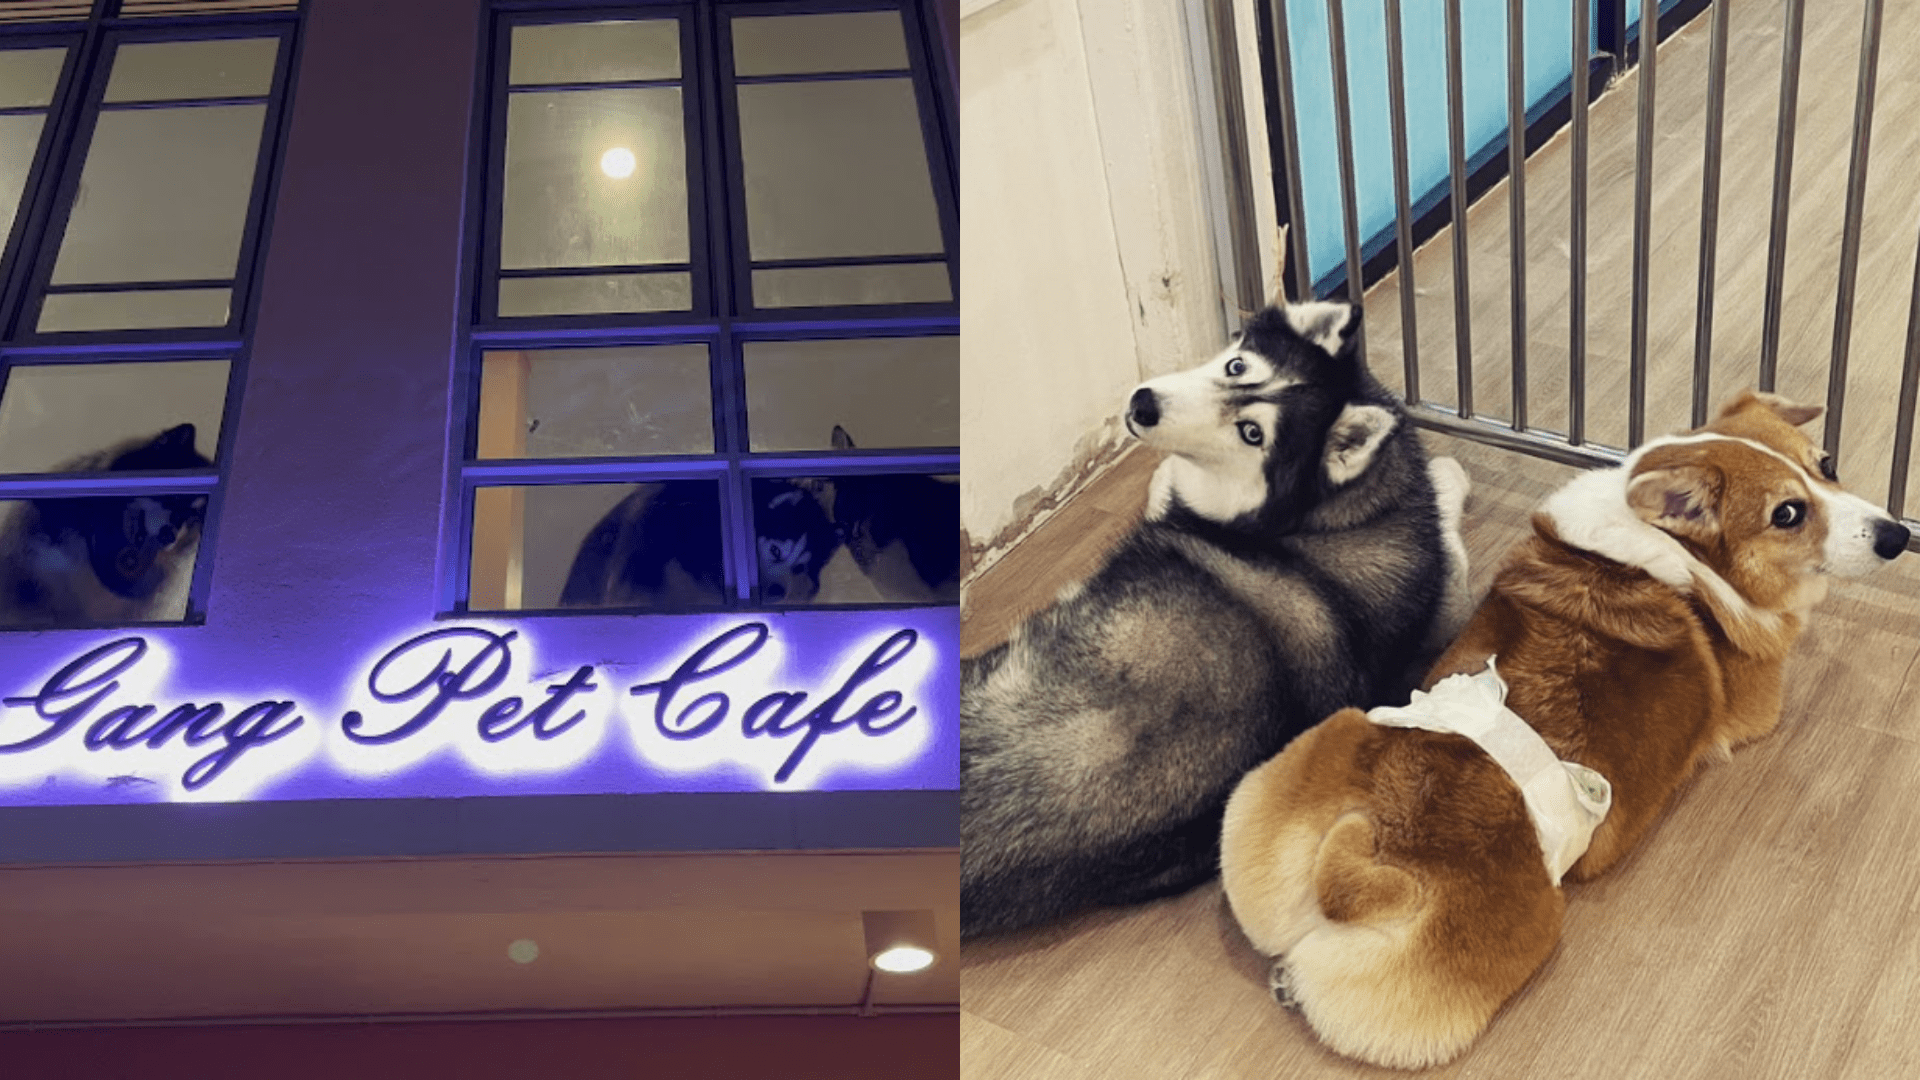 Corgi and the gang Pet Cafe